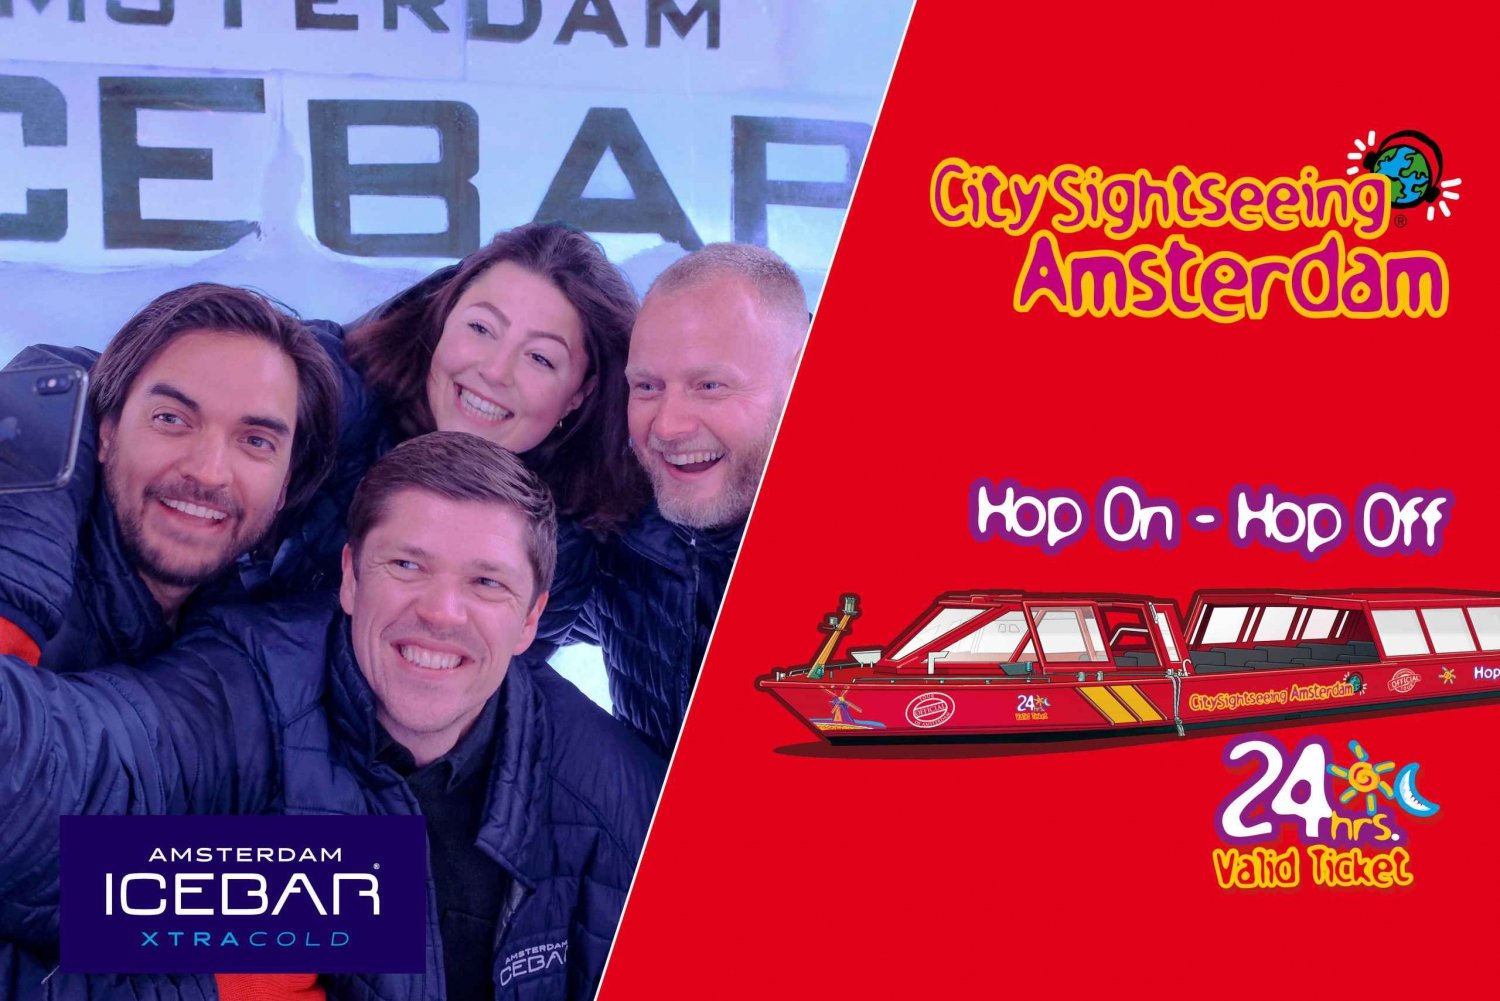 Amsterdam: 24 tunnin Hop-On Hop-Off-laiva ja XtraCold Icebar -jääbaari